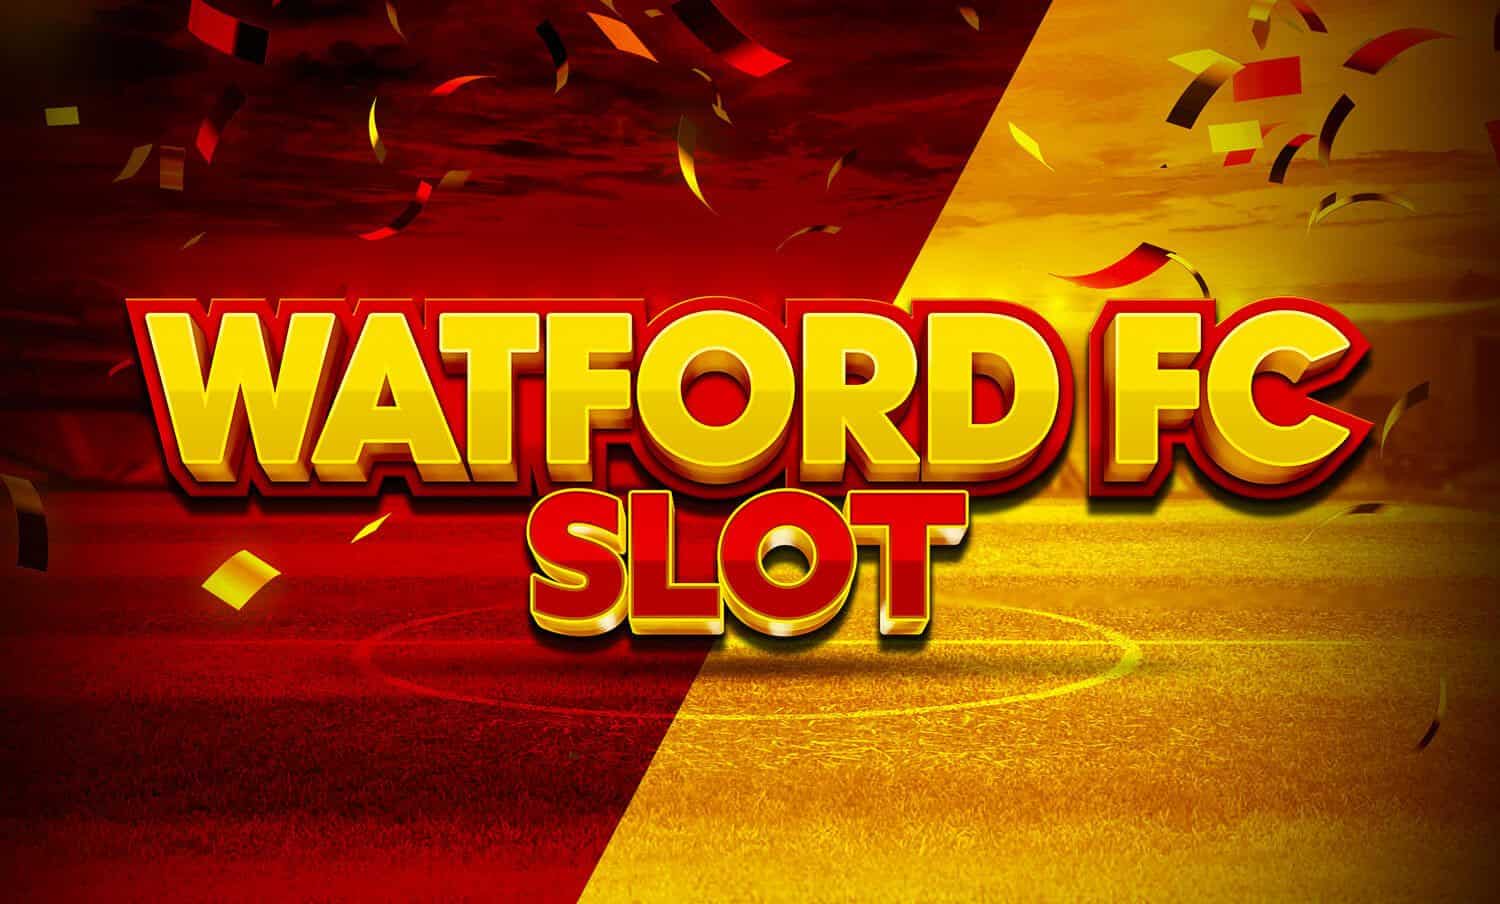 Watford FC Slot slot cover image